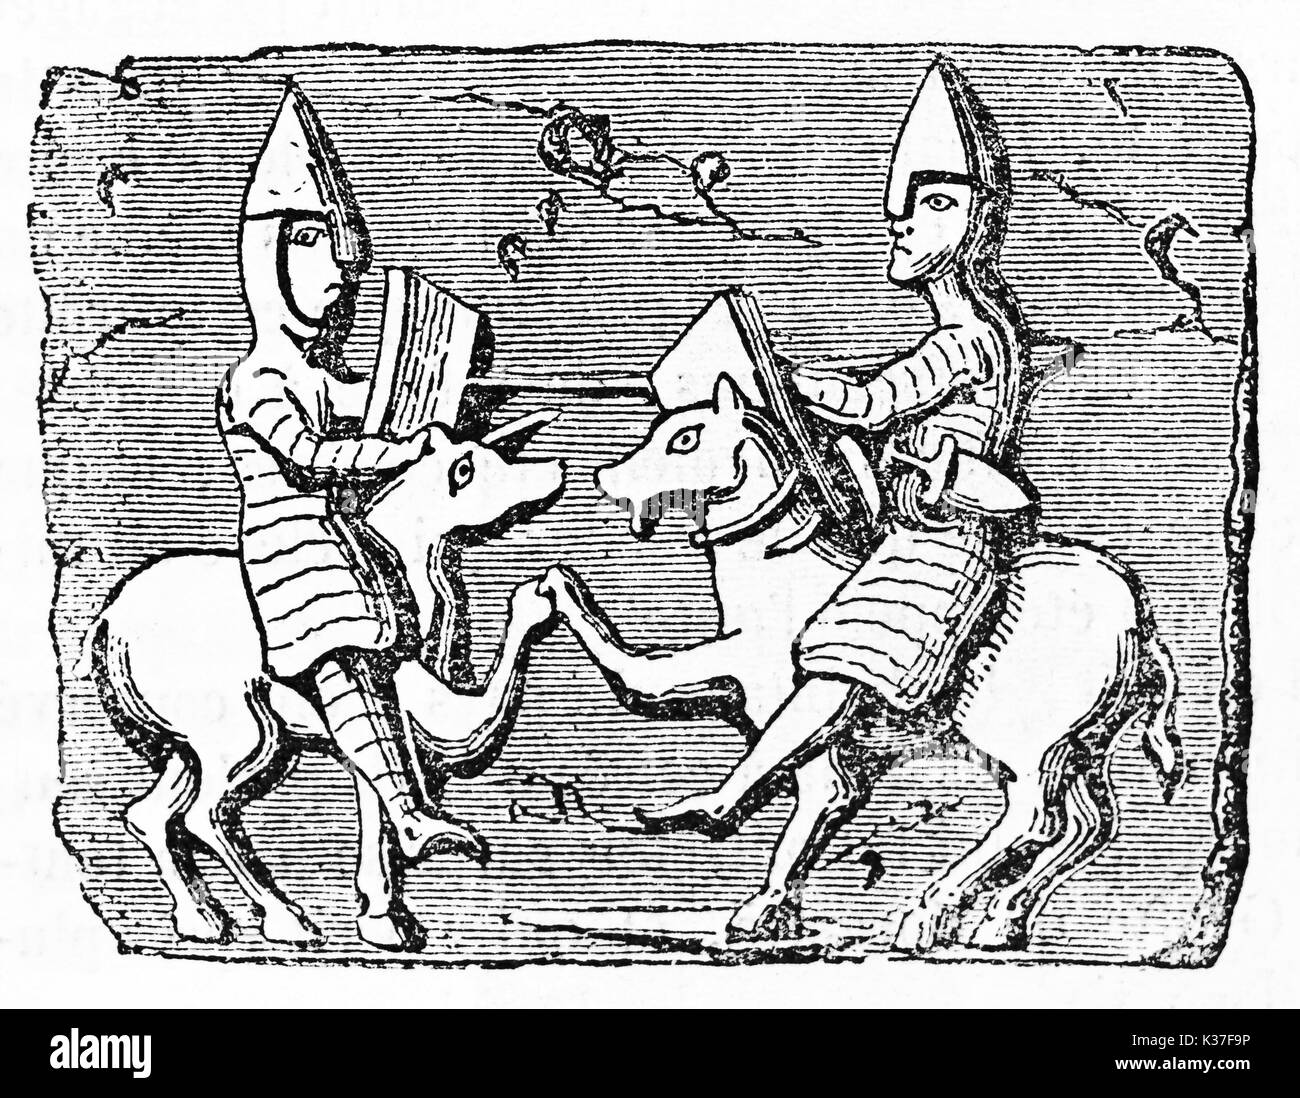 L'ancienne image emblématique de deux combats de chevalier sur leurs chevaux représentés en vue de côté, en face de l'autre. Vieille Illustration d'auteur non identifié publié le magasin pittoresque Paris 1834 Banque D'Images